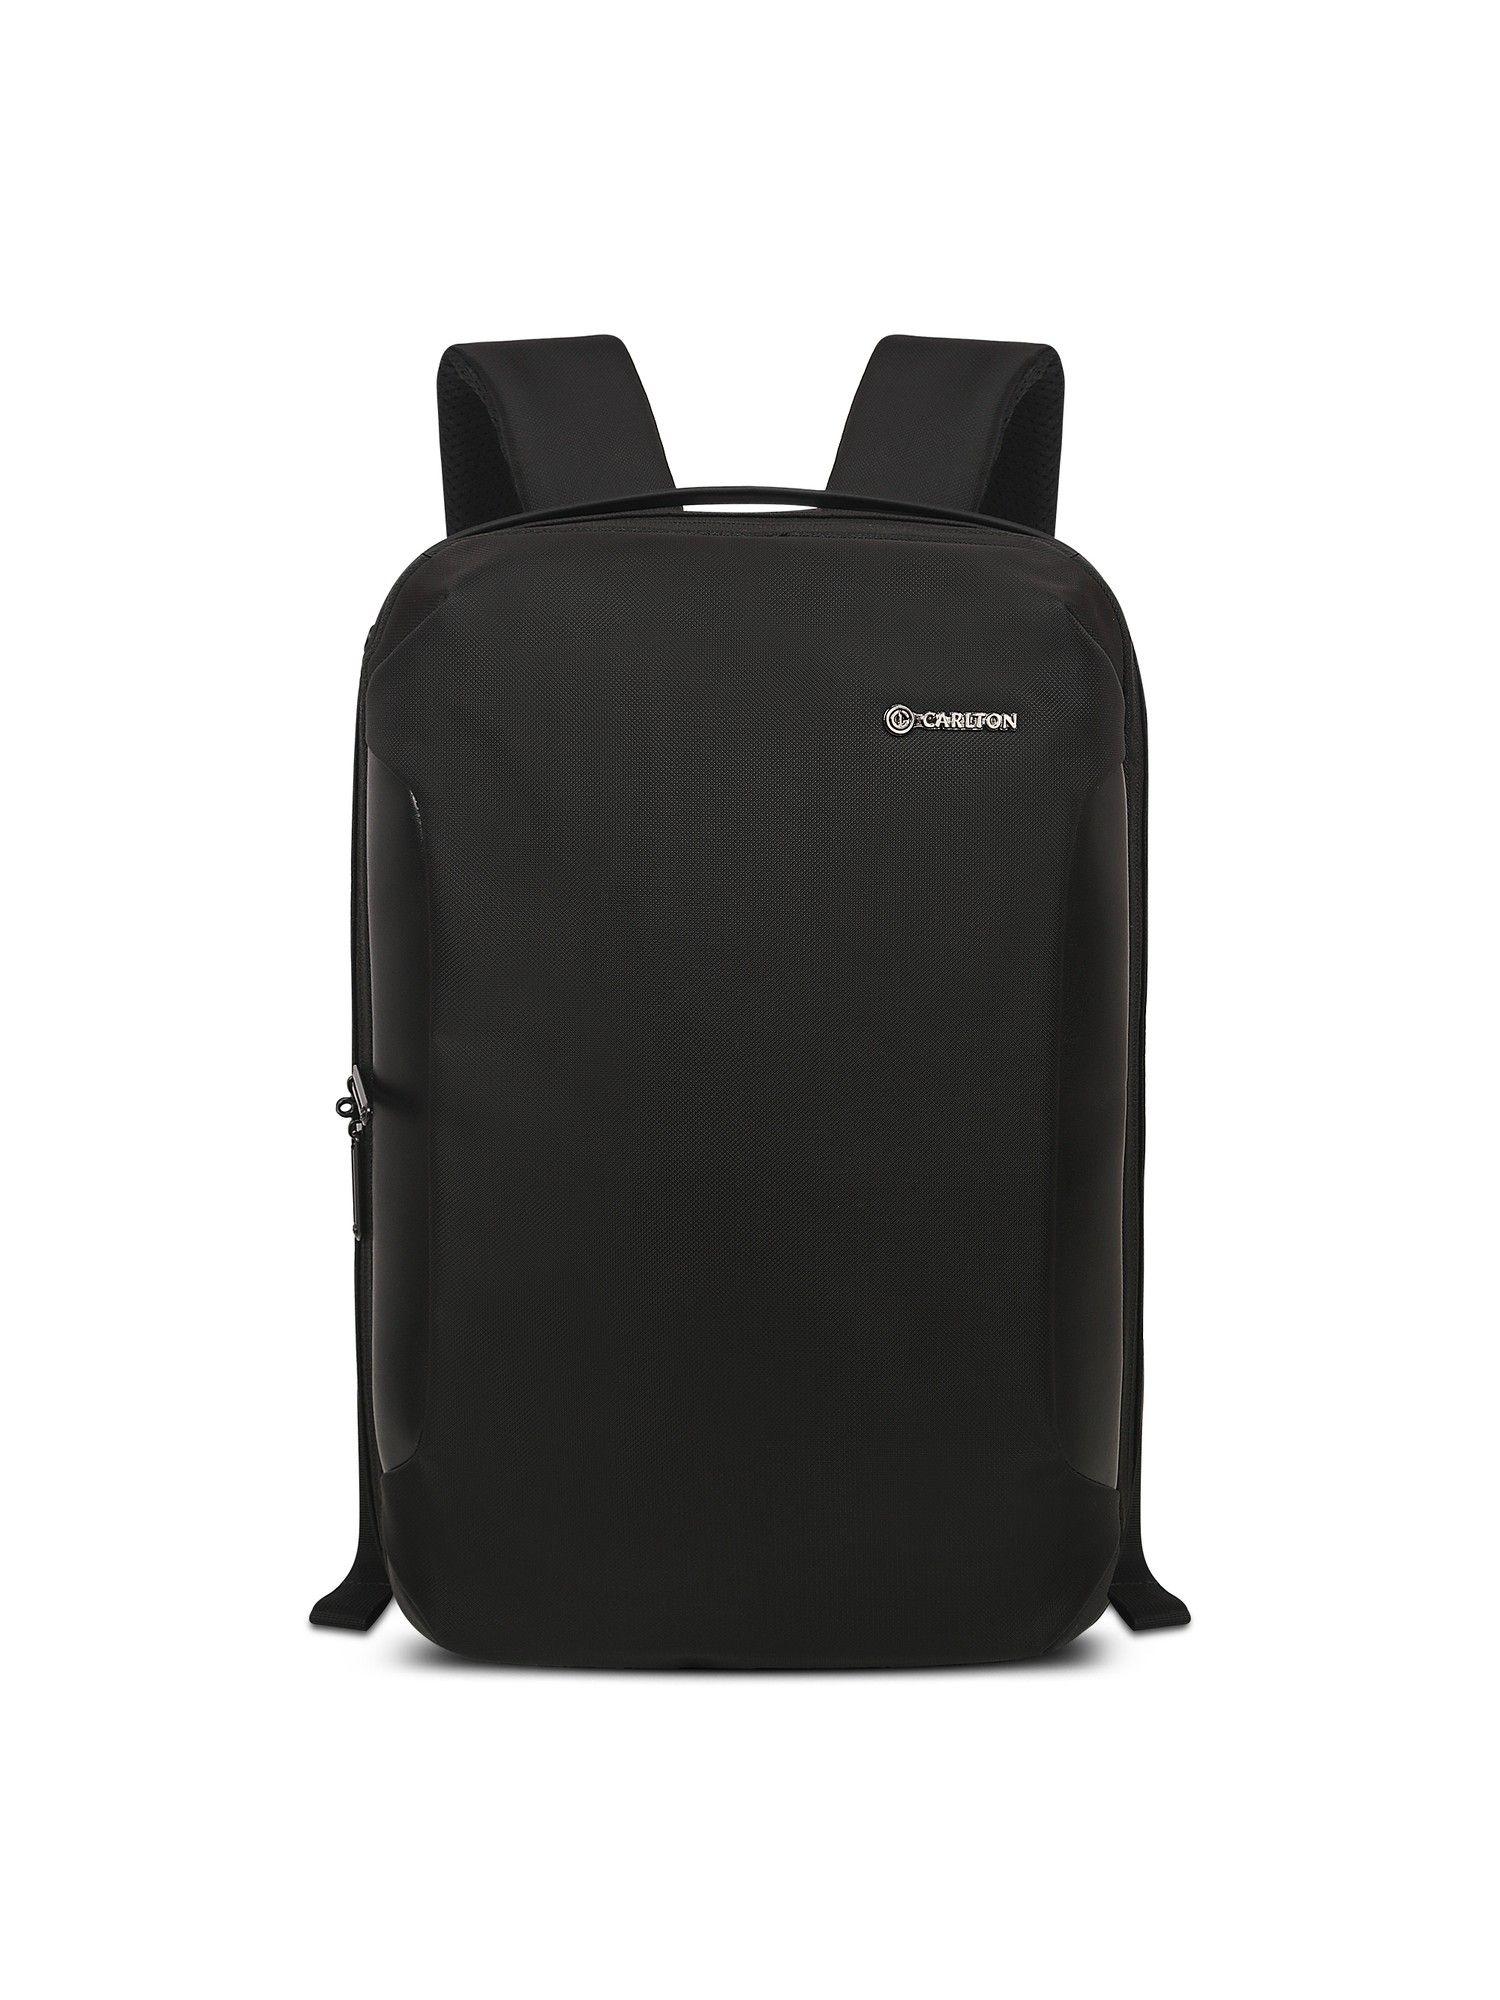 bradford 02 laptop backpack ferrous black